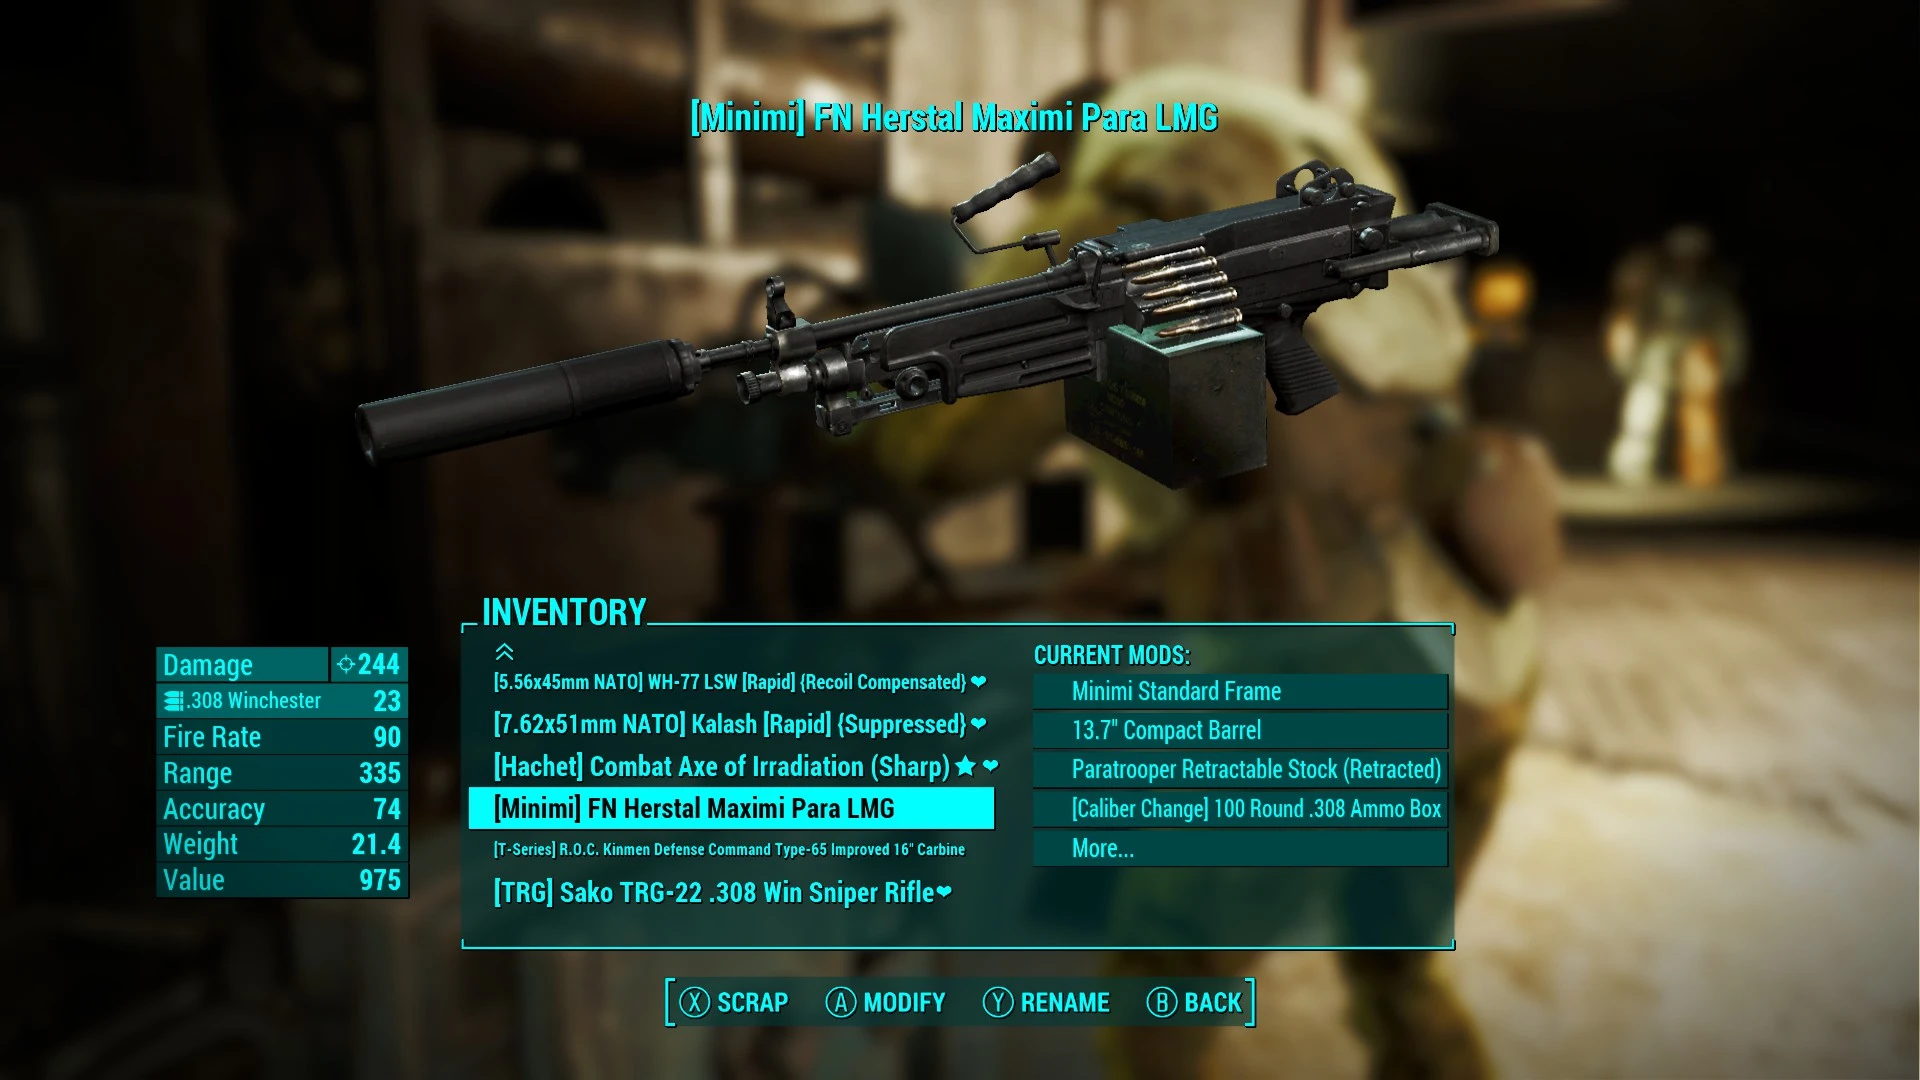 Быстрое переключение оружия. Fallout 4 мод Modern firearms. Weaponsmith Extended. Modern firearms Fallout 4 на русском. Firearms 3.0 Mods.